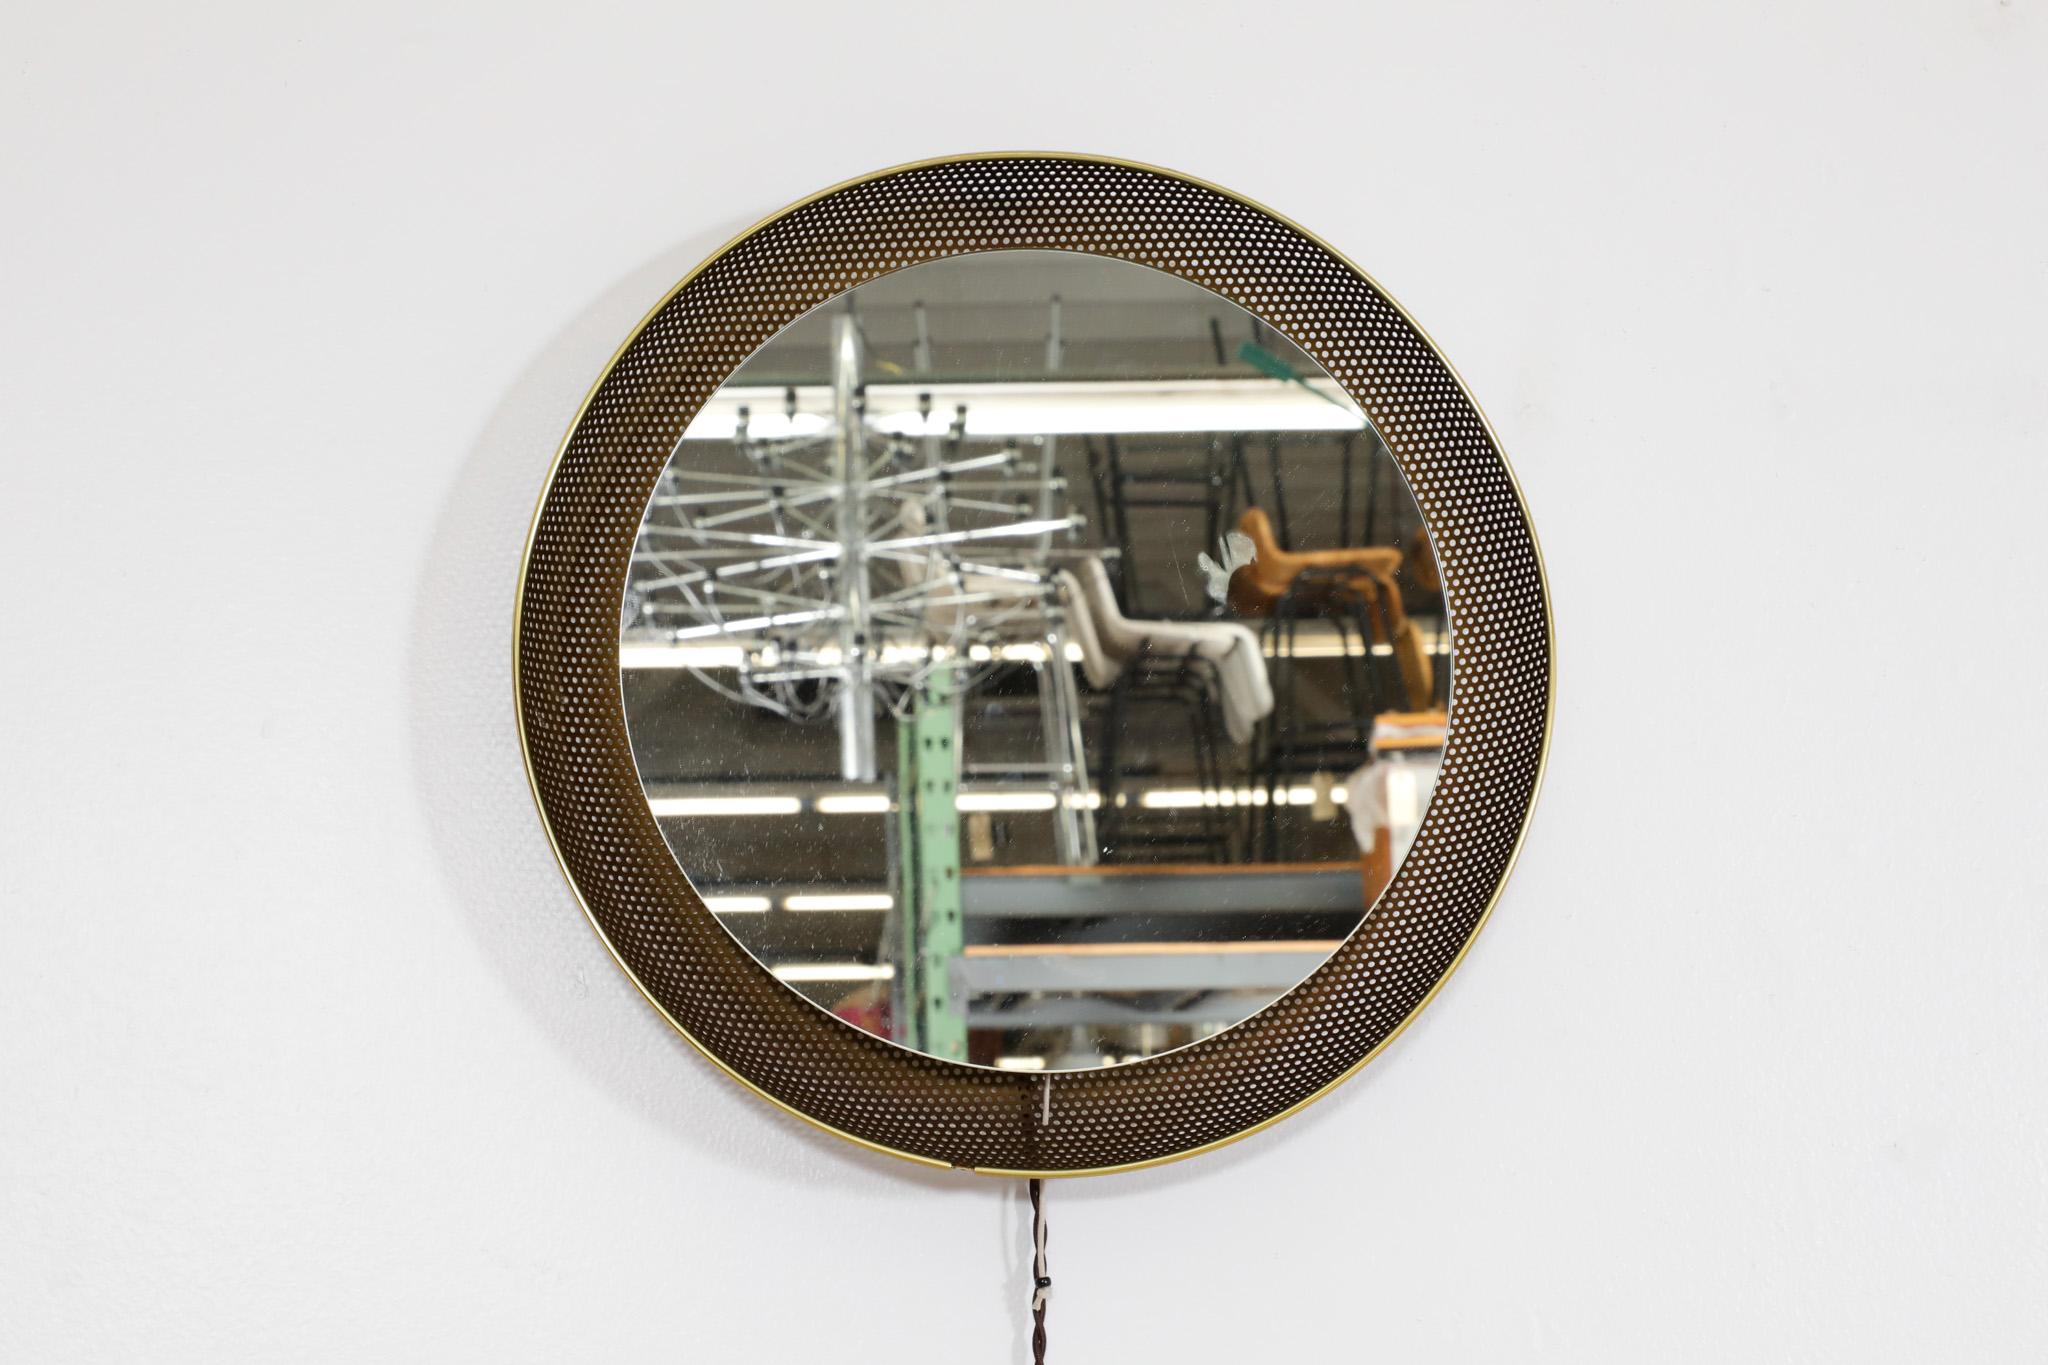 Goldfarbener, von Mathieu Mategot inspirierter, hinterleuchteter Spiegel mit violett emailliertem, perforiertem Metallrahmen, Messingverzierung und Zugschalter. Hergestellt von dem niederländischen Unternehmen Artimeta. Im Originalzustand mit